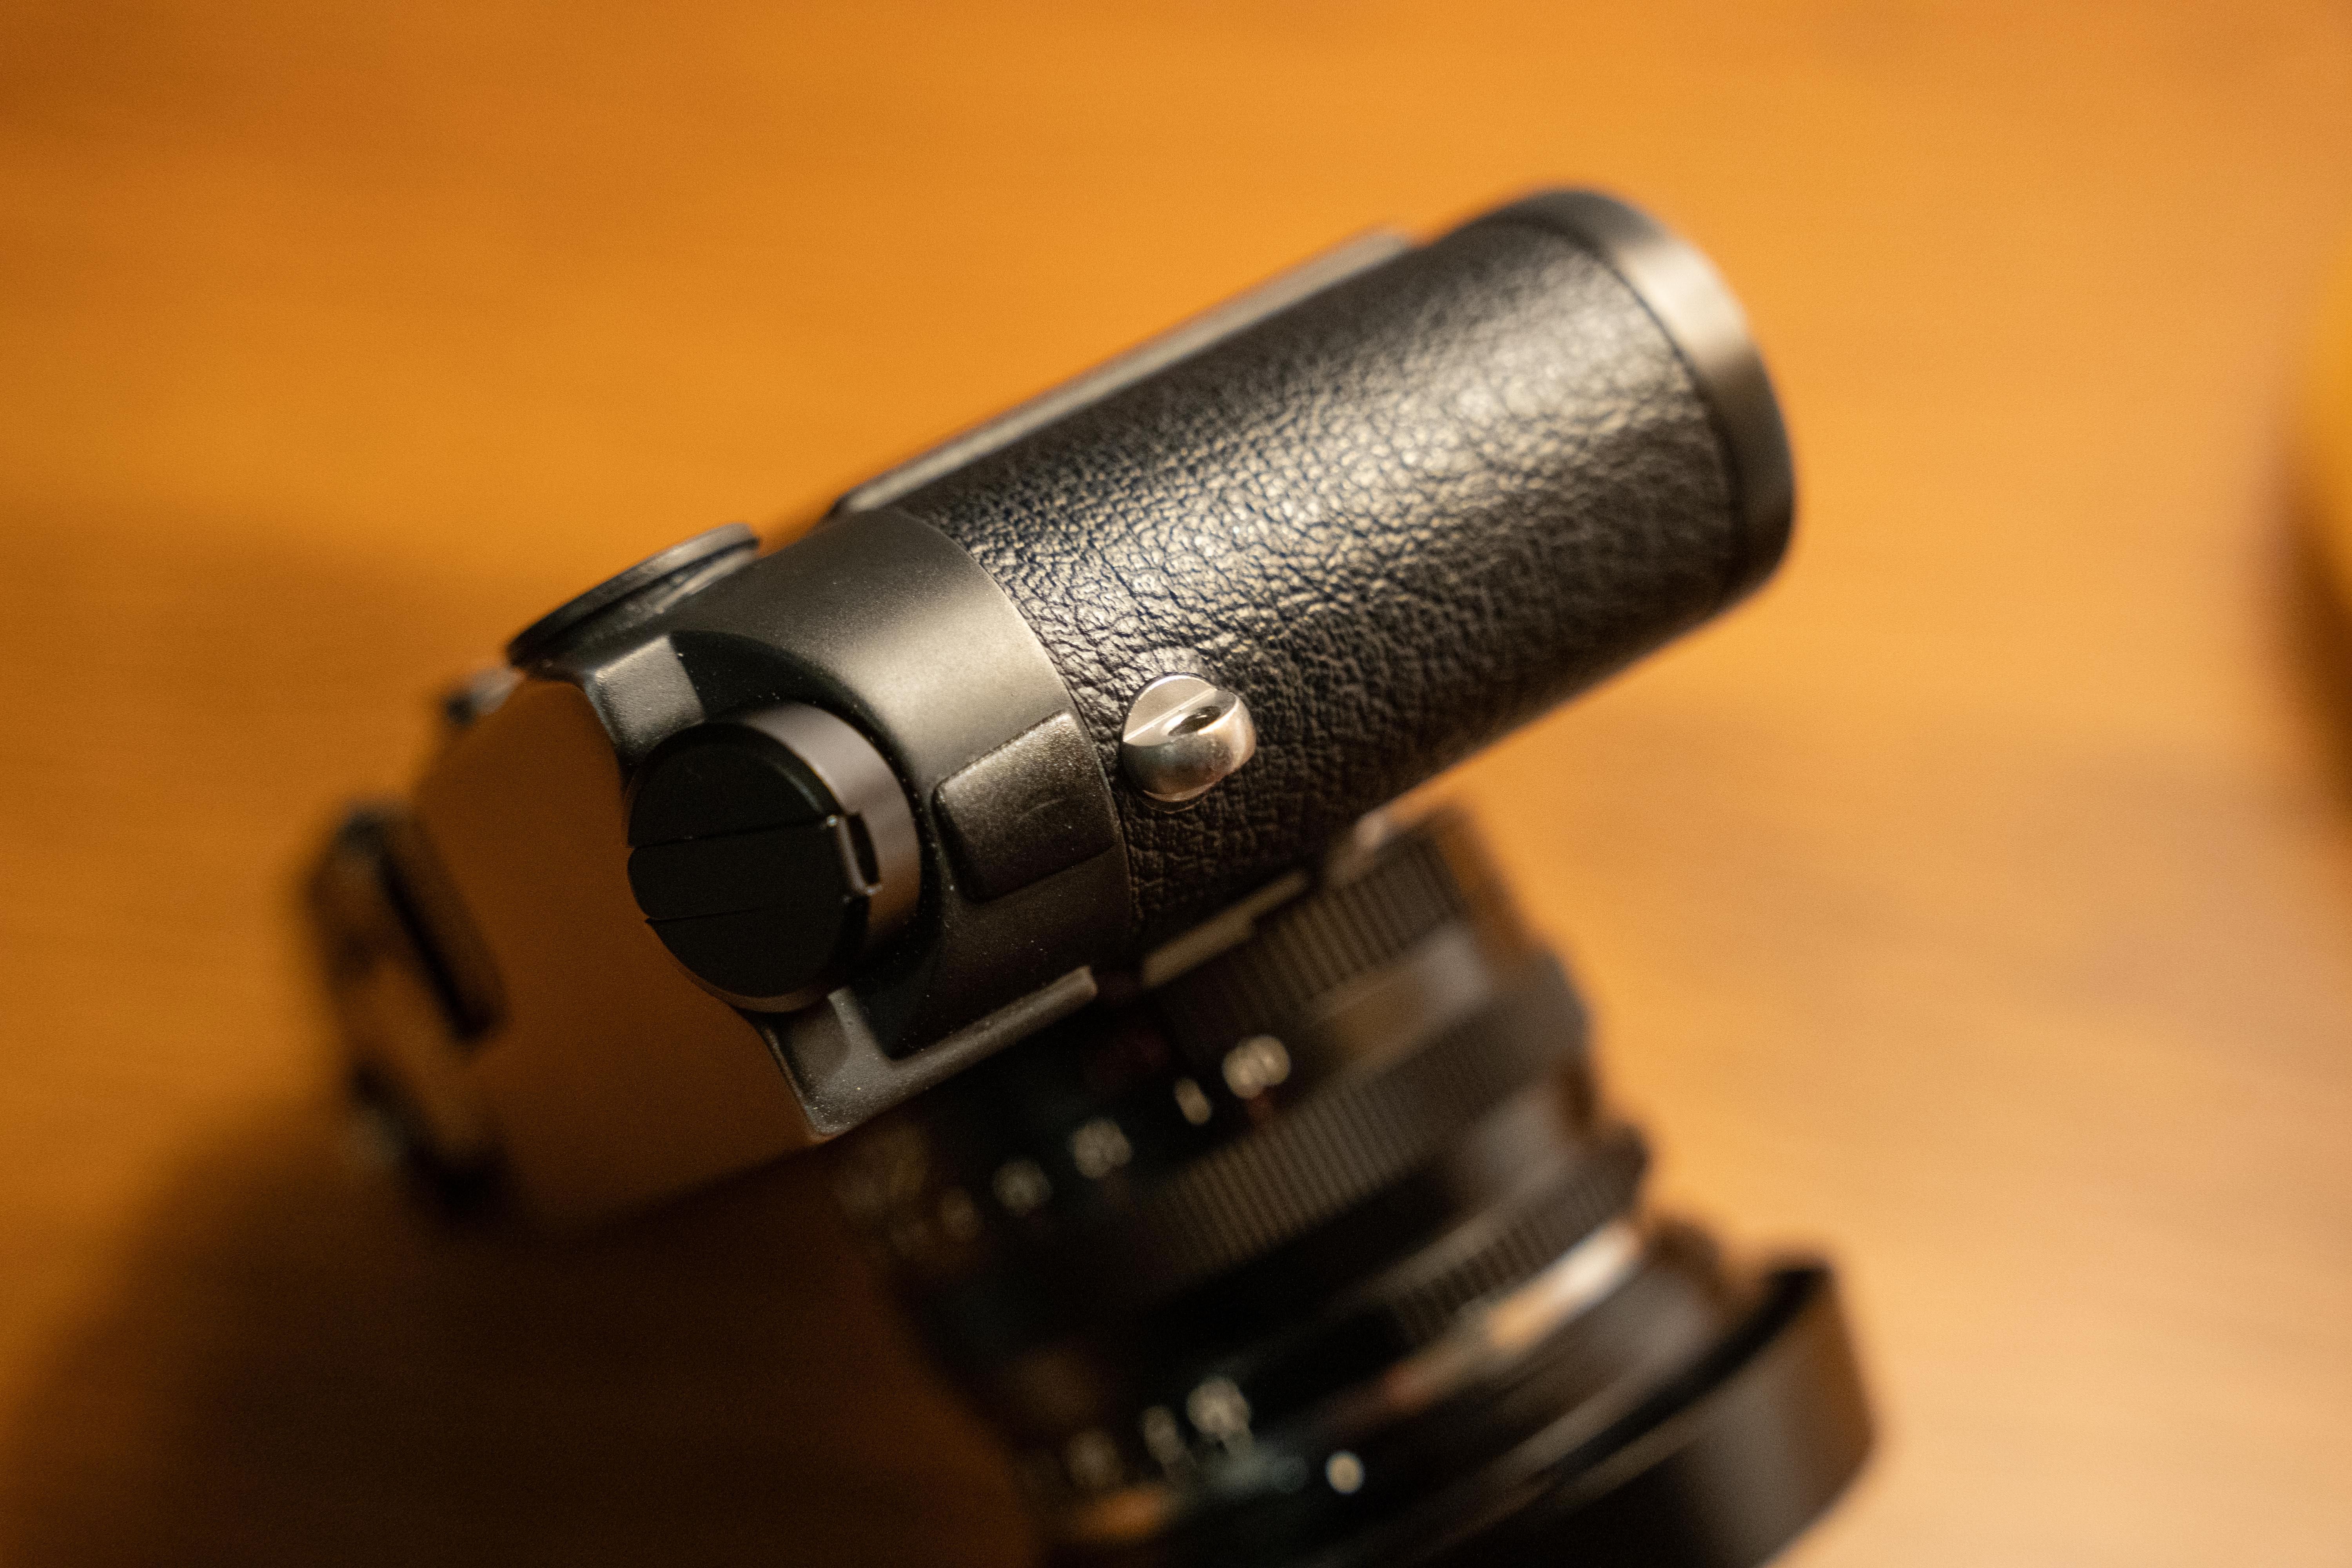 Aparat Leica M6 z obiektywem Carl Zeiss 50mm f/1.5